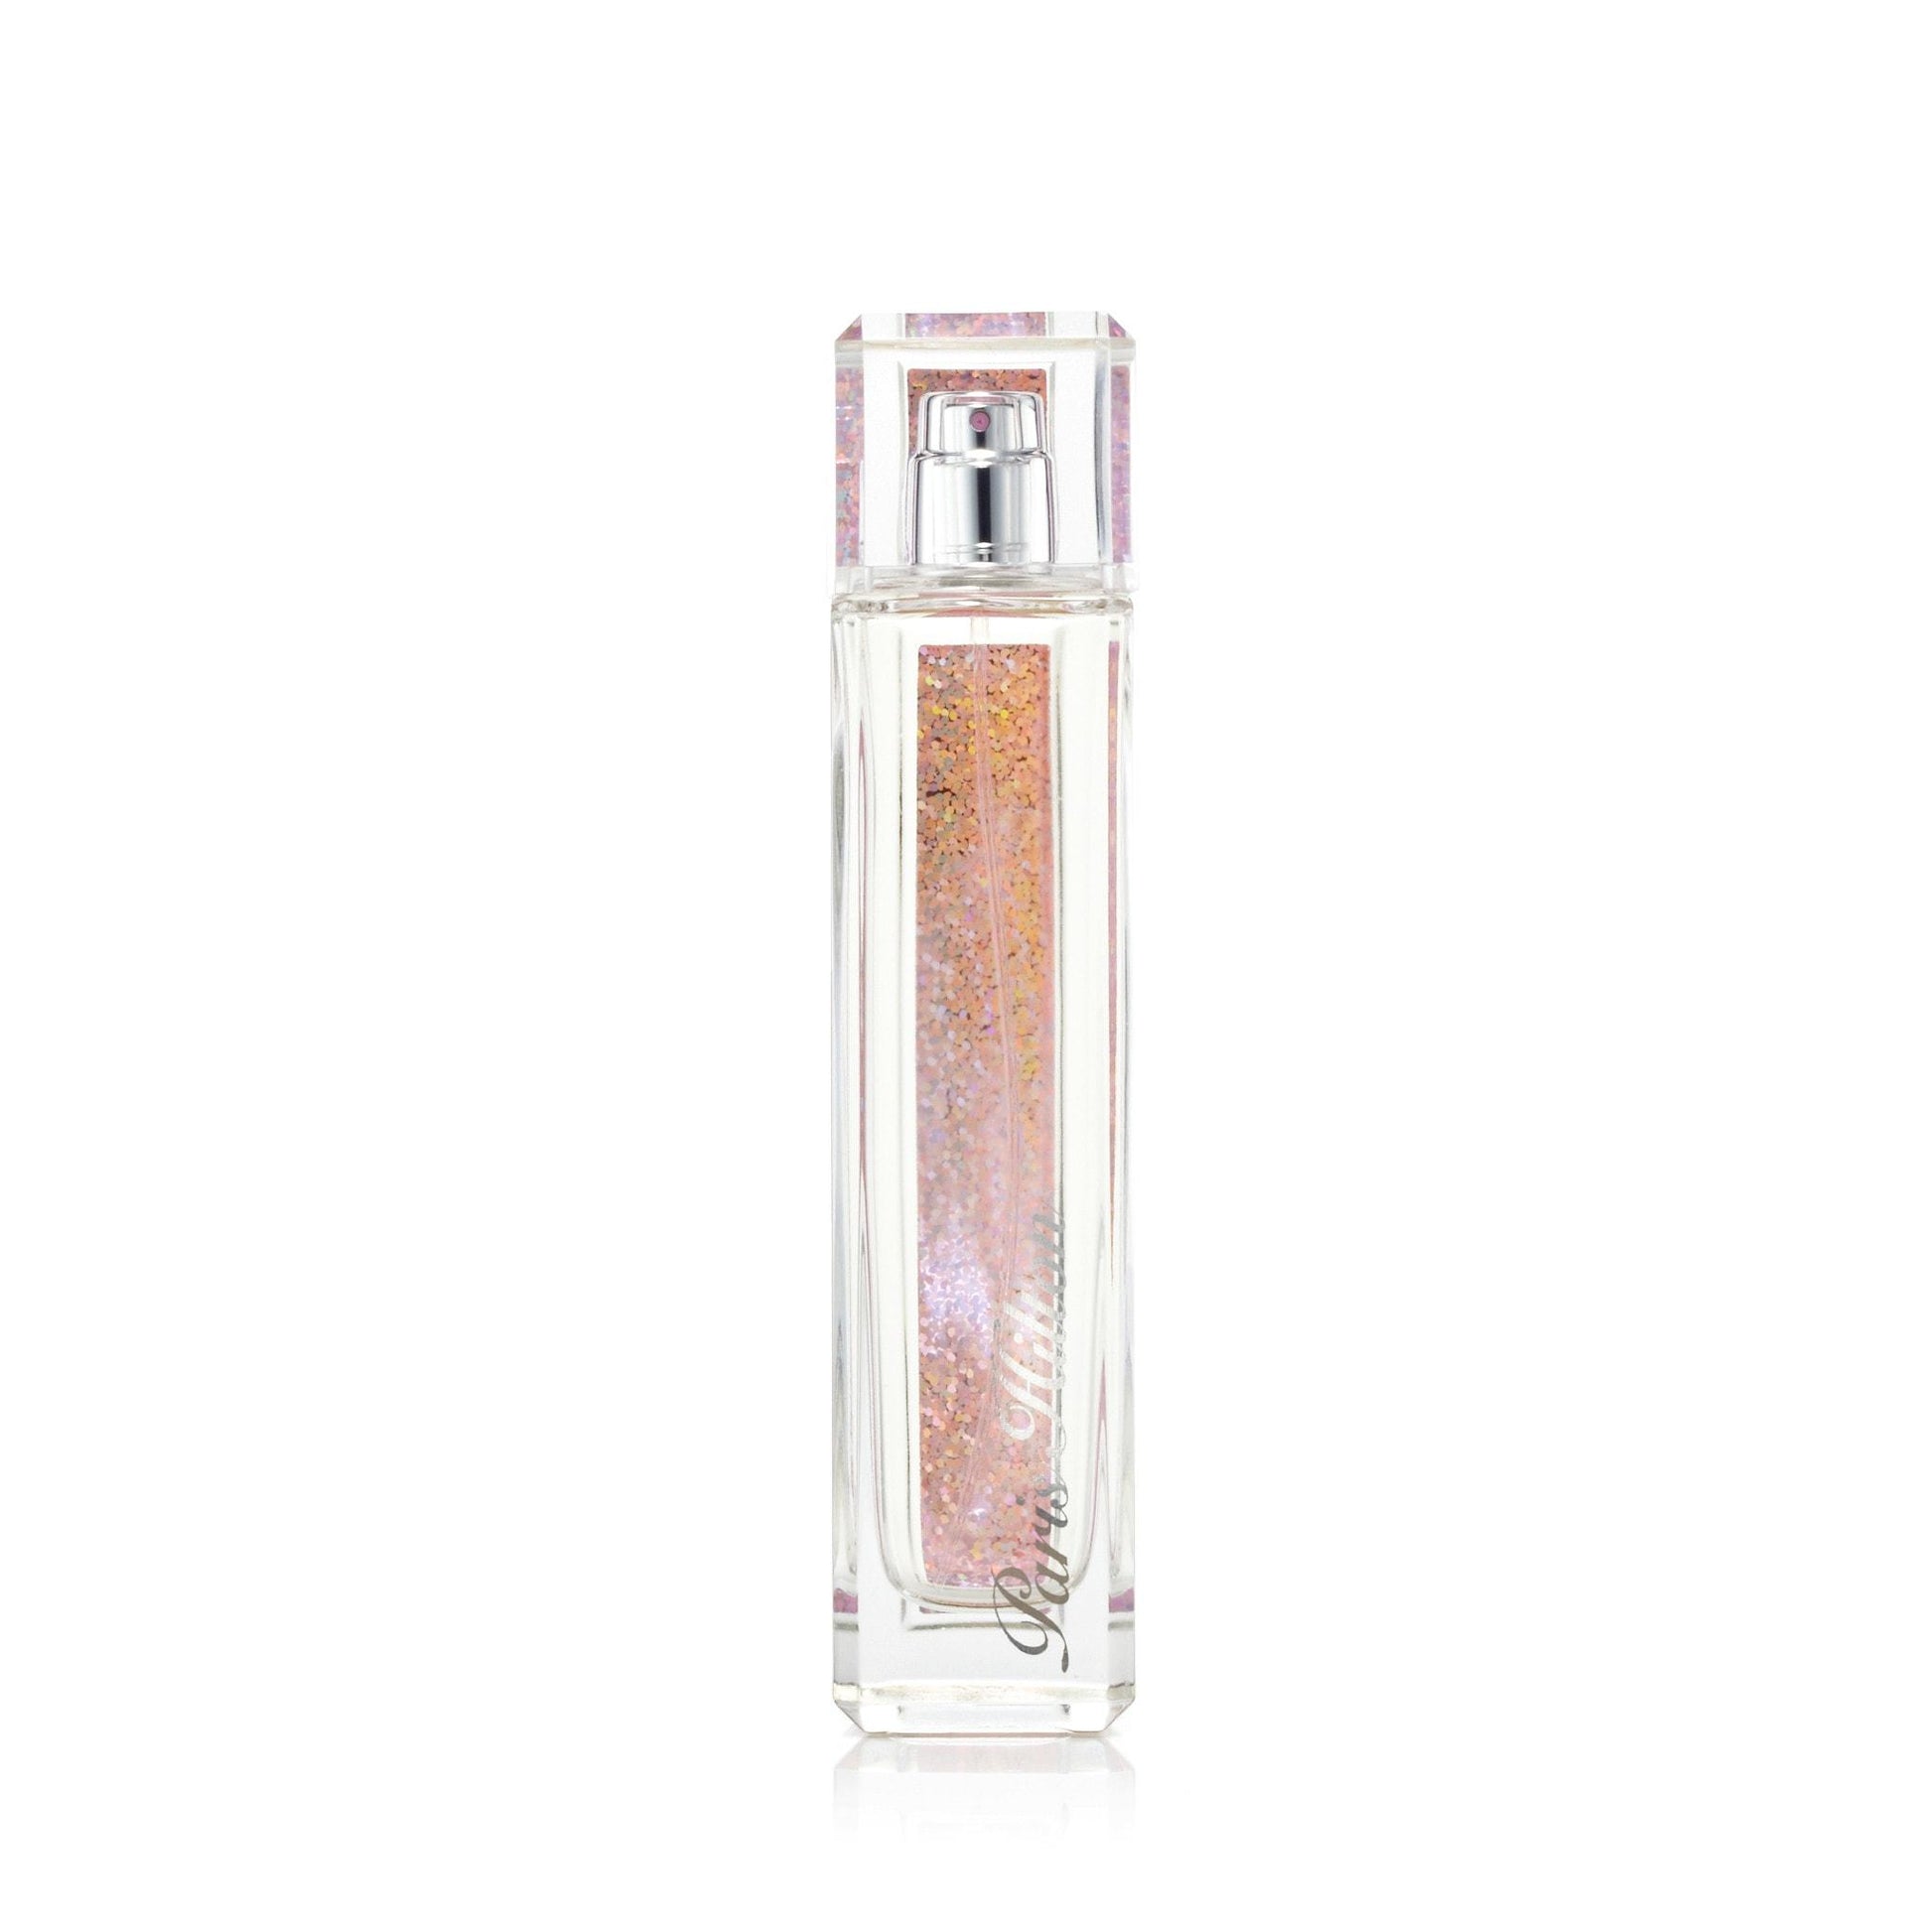 Heiress Eau de Parfum Spray for Women by Paris Hilton, Product image 2